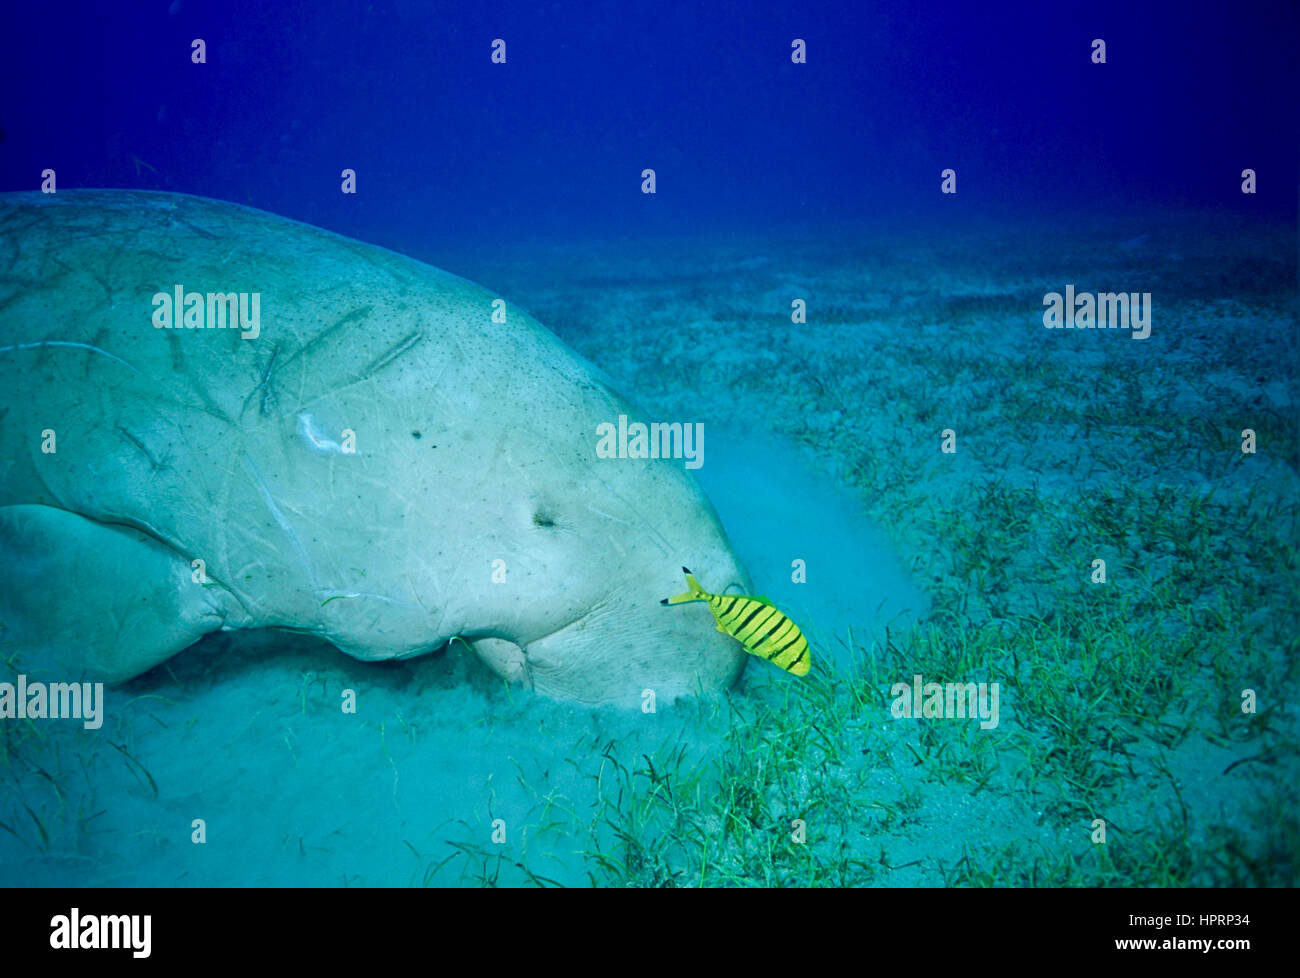 Un dugong (Dugong dugon), avec son poisson pilote d'accompagnement (Gnathanodon speciosus), l'alimentation avec voracité sur herbe de mer. Vulnérable sur liste rouge de l'UICN. Banque D'Images